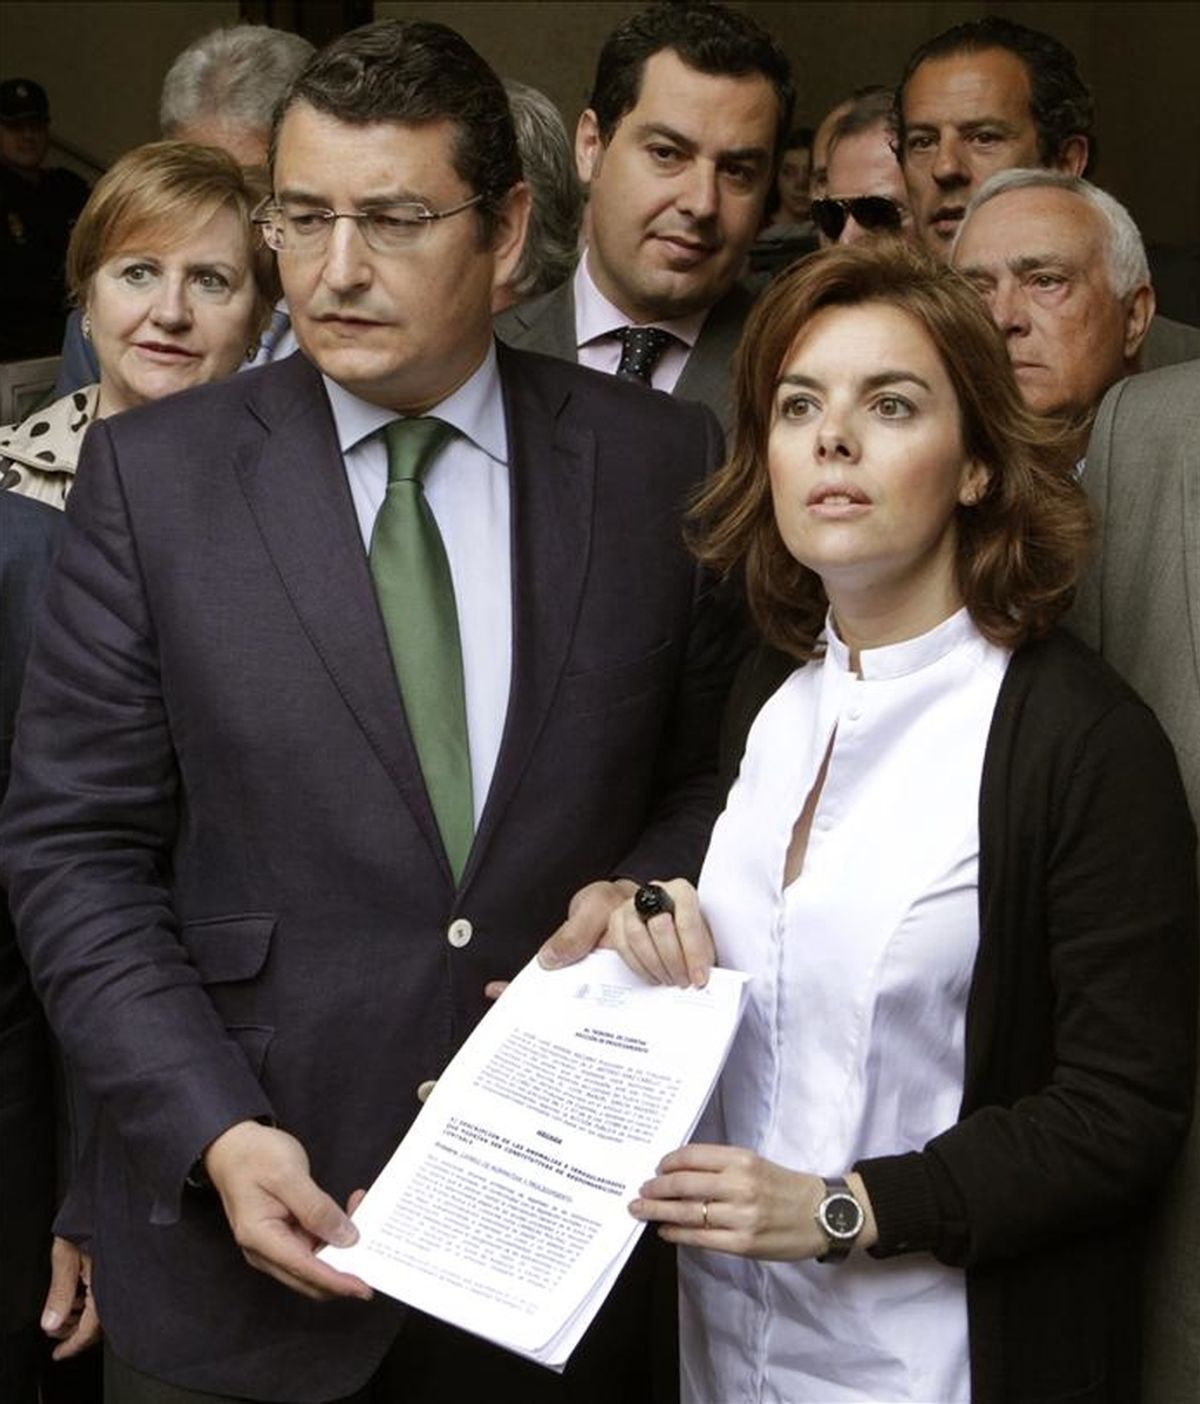 La portavoz del PP en el Congreso, Soraya Sáenz de Santamaría, y el secretario del PP andaluz, Antonio Sanz, presentaron hoy ante el Tribunal de Cuentas un escrito de denuncia por las irregularidades detectadas en los expedientes de regulación de empleo (ERE) de varias empresas de Andalucía. EFE